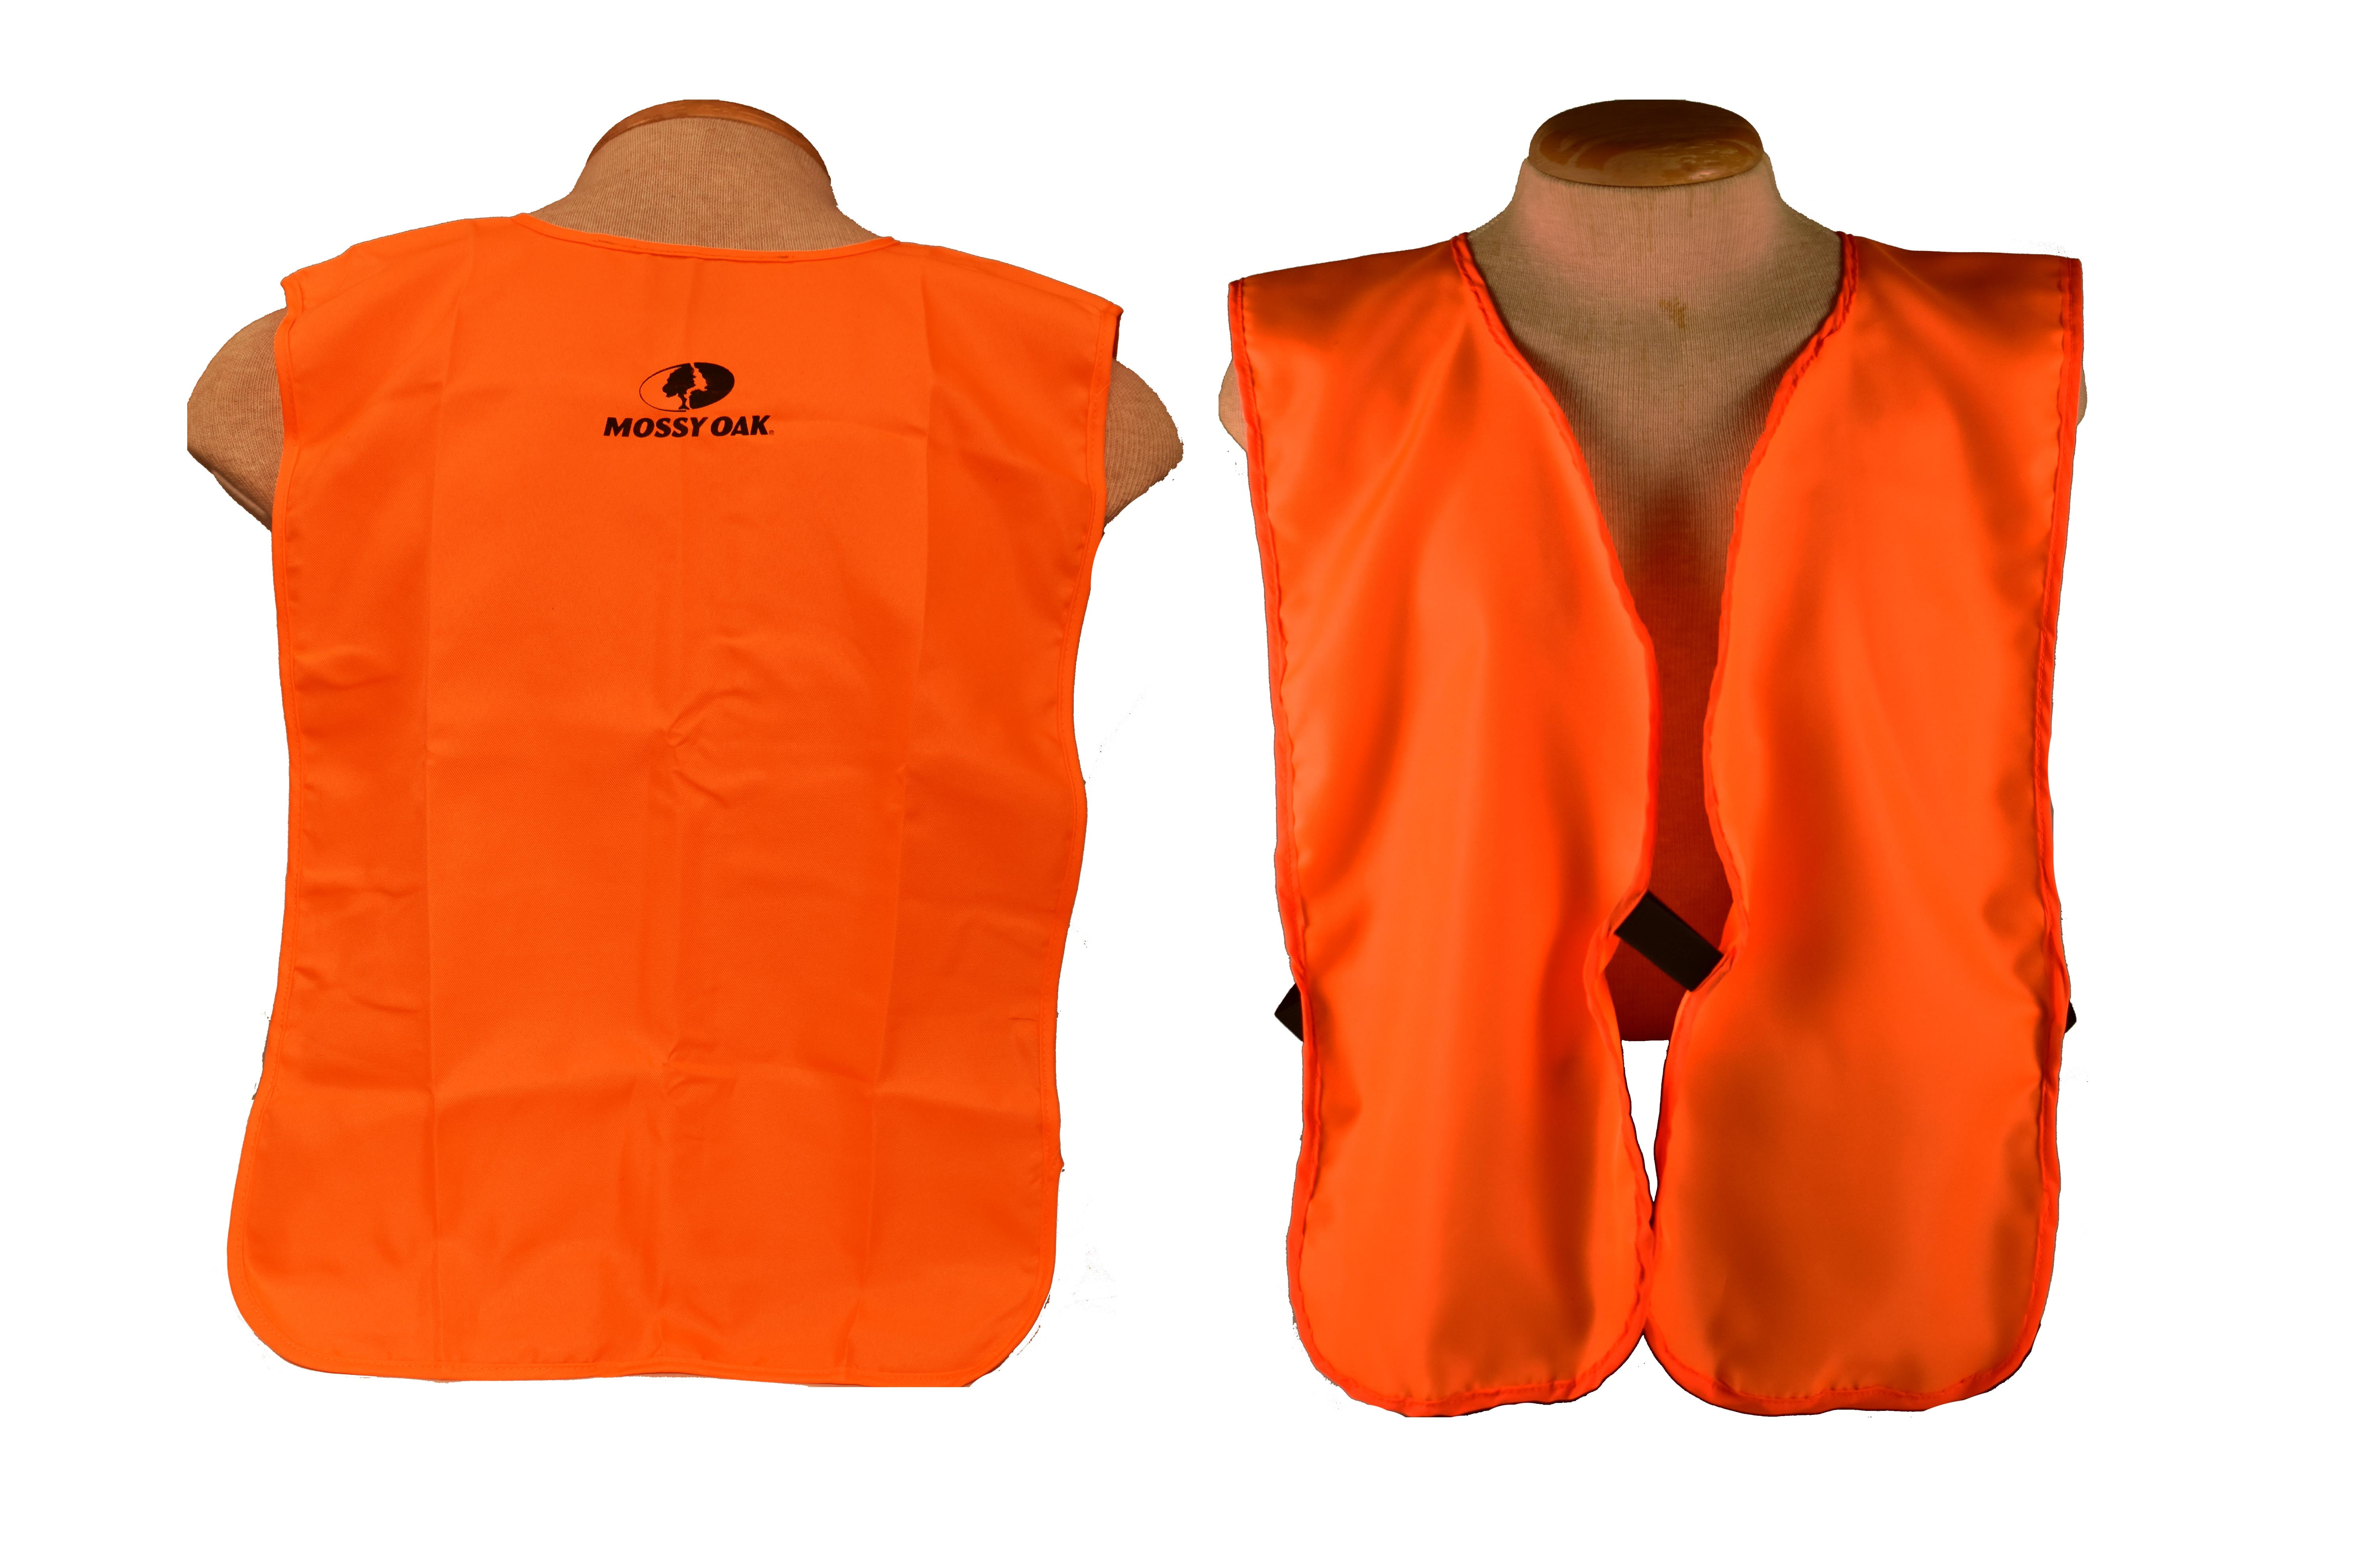 Mossy Oak Hunters Hunting Safety Vest Blaze Orange size Large L NEW 